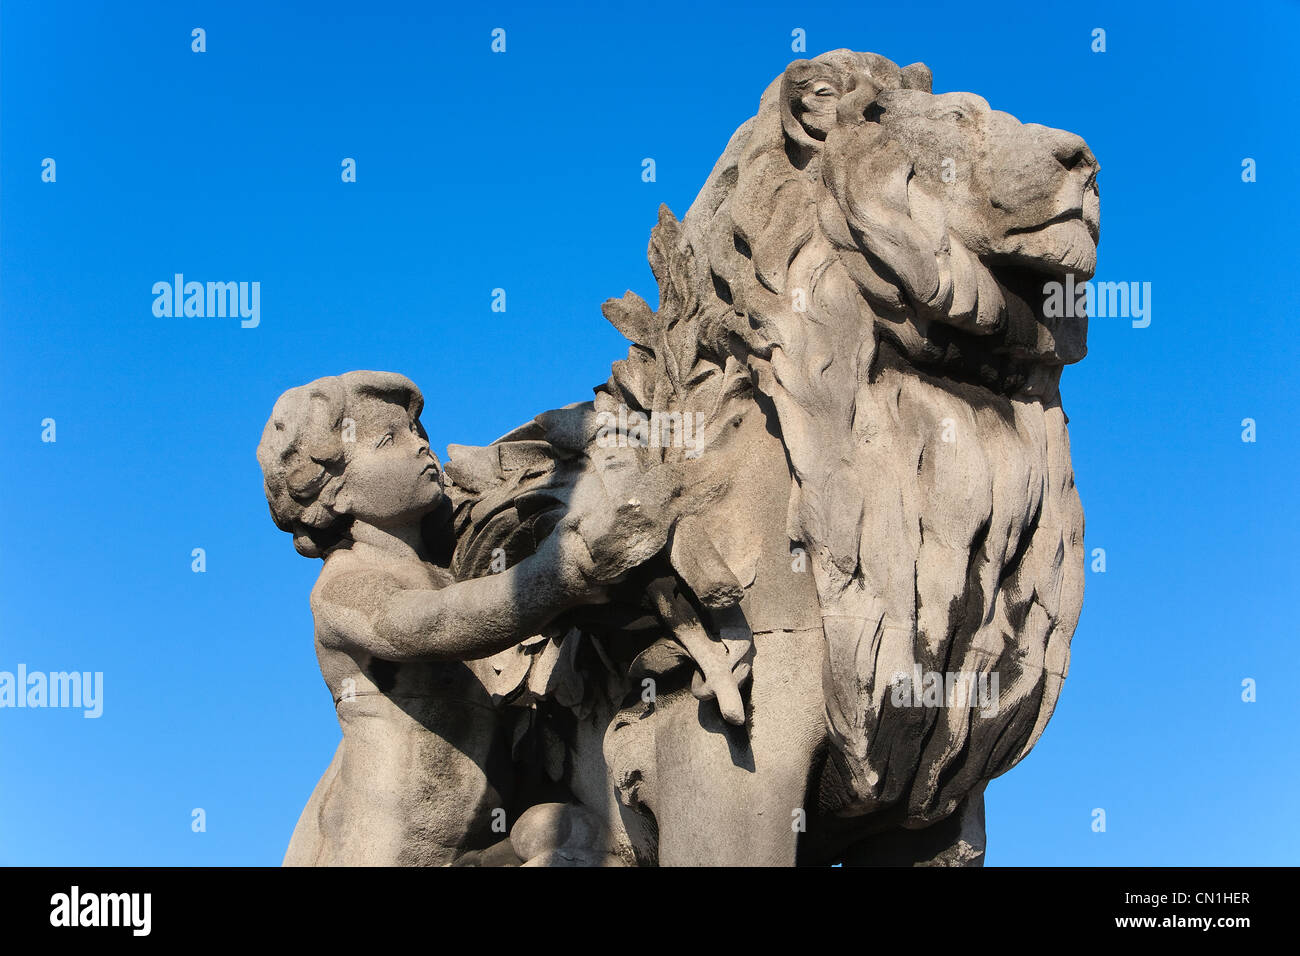 France, Paris, pont Alexandre III, statue by Jules Dalou Lion conduit par un enfant Stock Photo